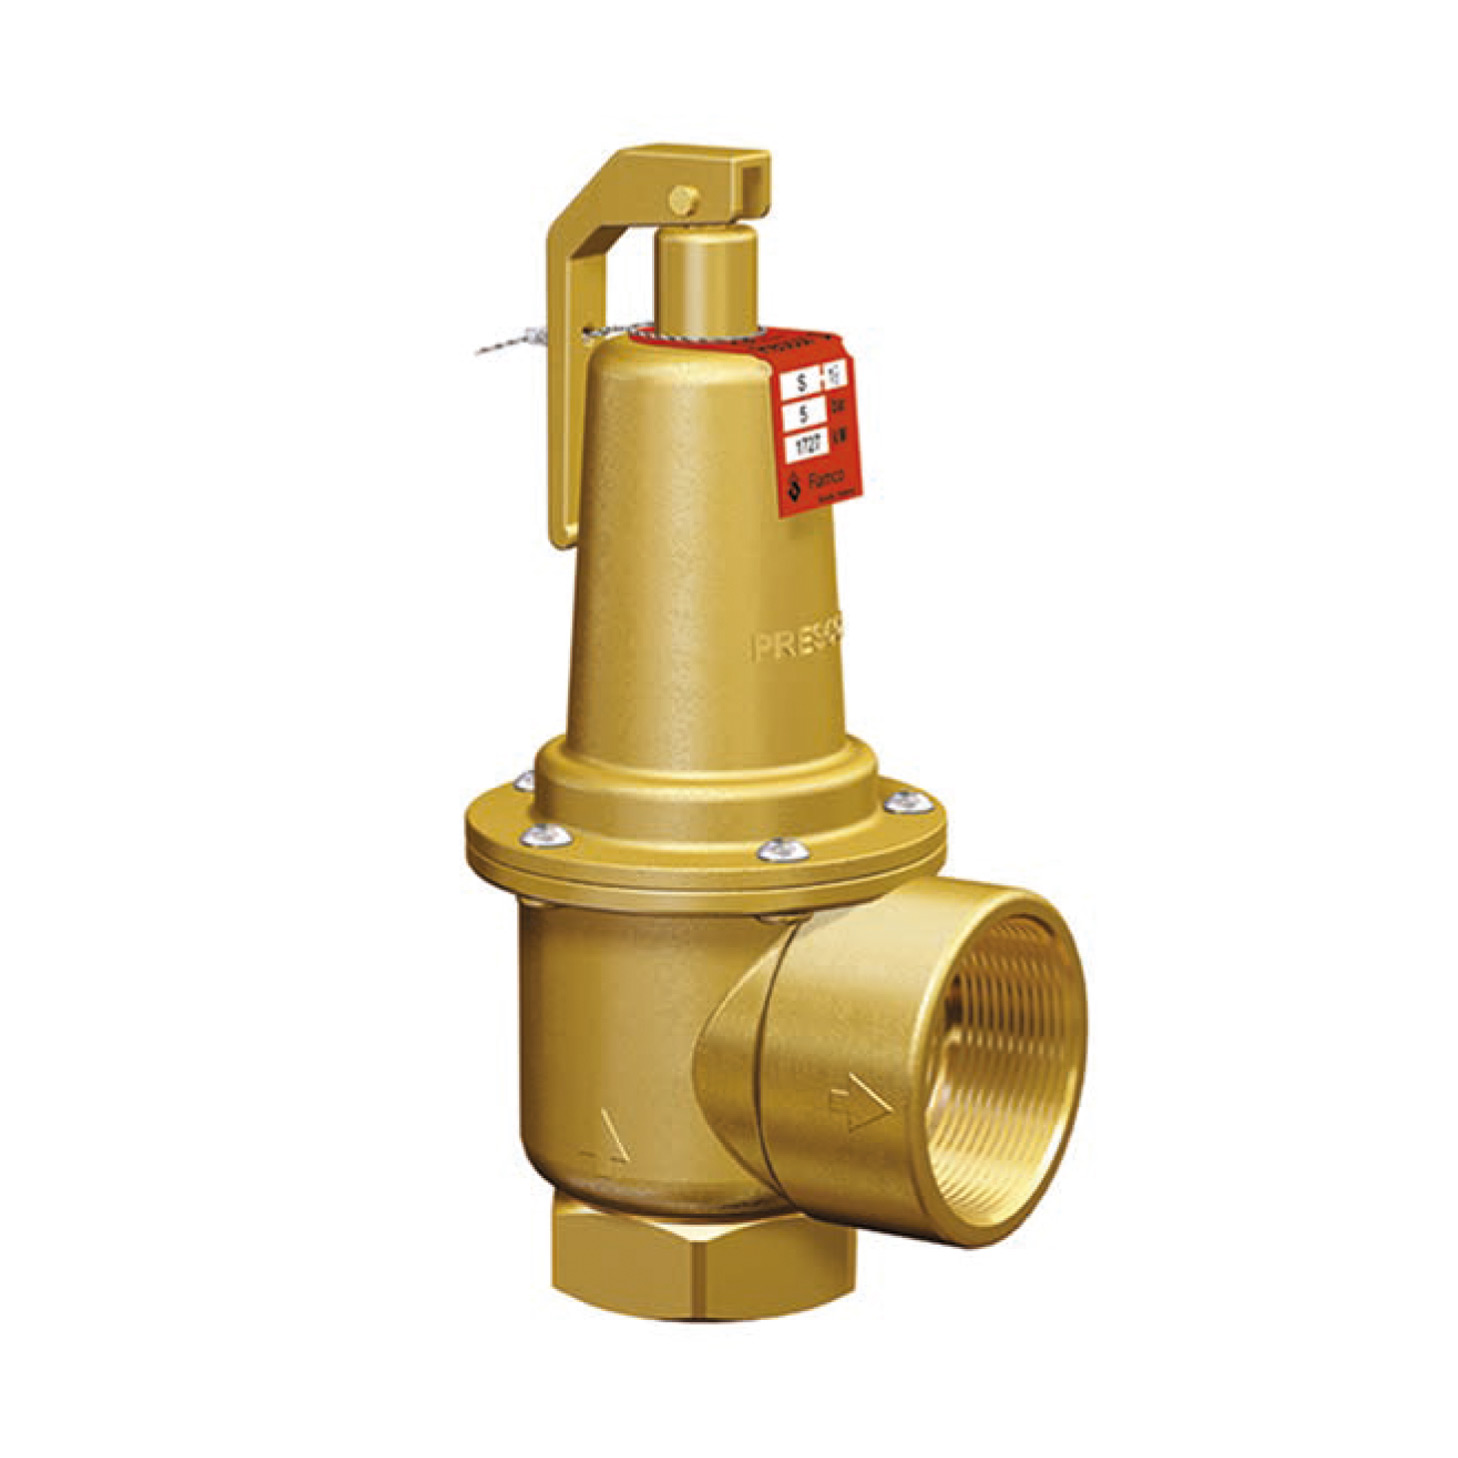 Prescor S pressure safety valves